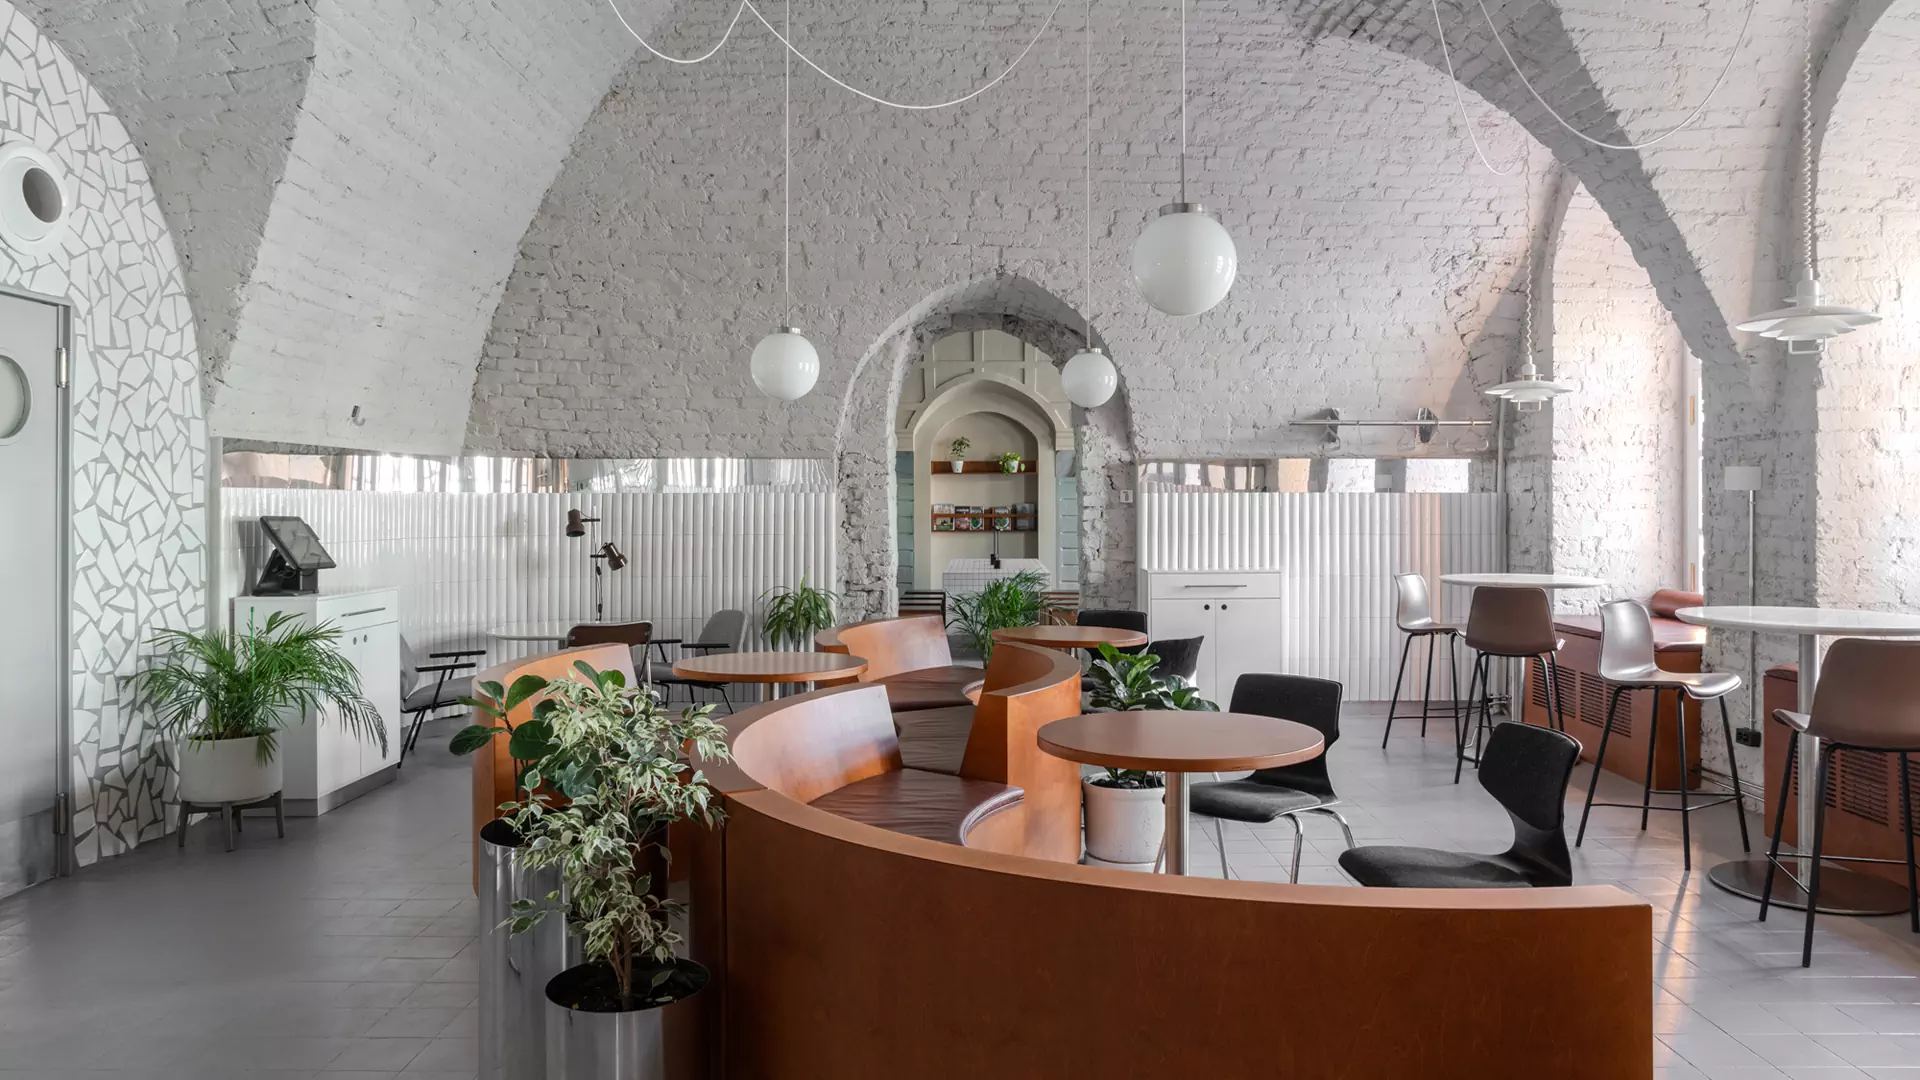 Переосмысление интерьера екатеринбургского кафе – проект дизайн-бюро Zavod11 и Дмитрия Погодина